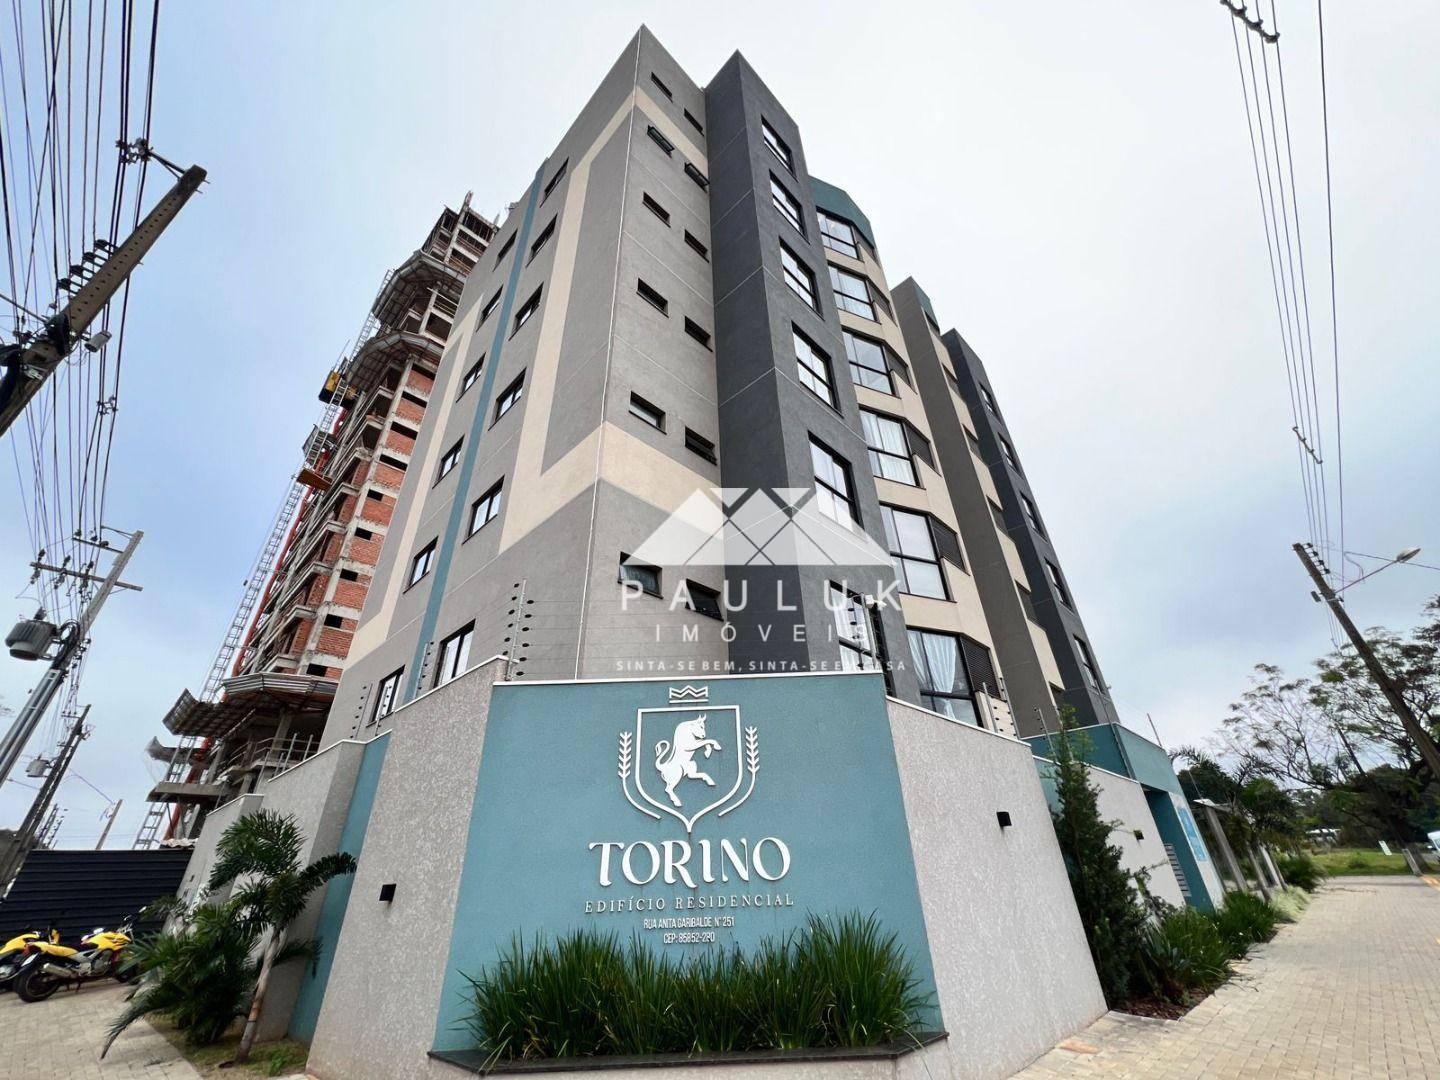 Apartamento com 2 Dormitórios Sendo 1 Suíte à venda Por R$ 595.000 - Edifício Residencial Torino - F | PAULUK IMÓVEIS | Portal OBusca